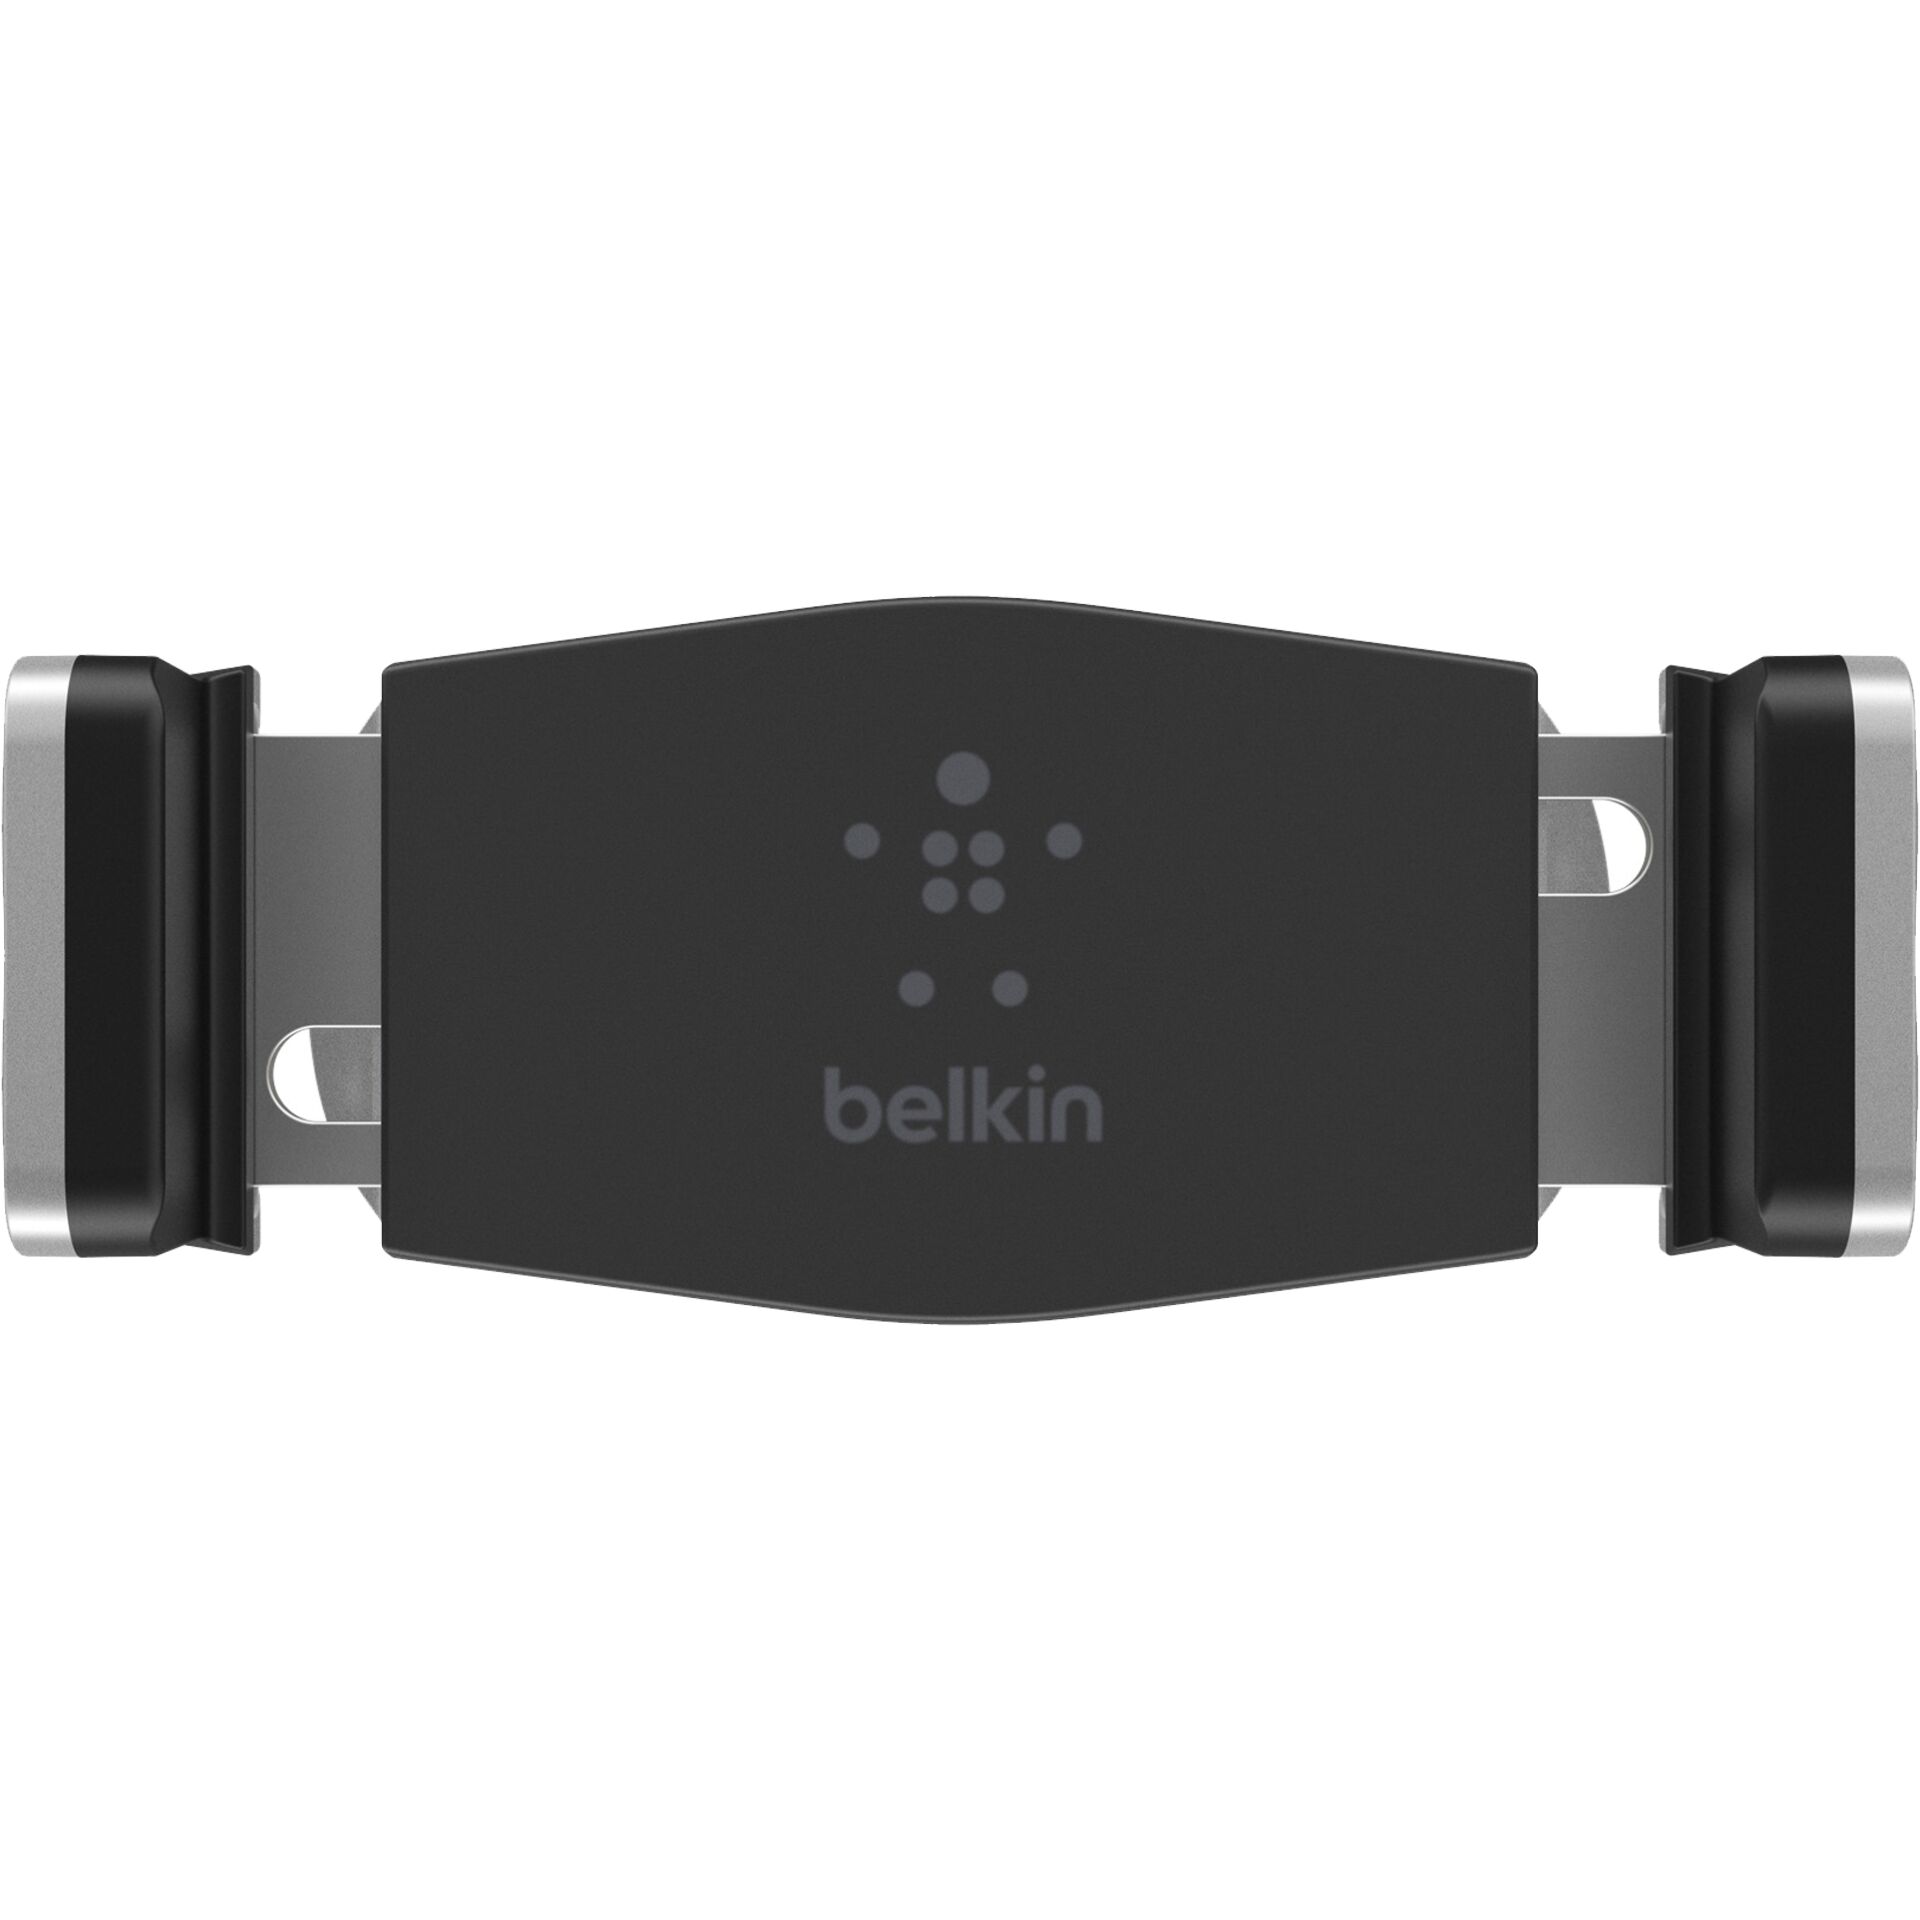 Belkin car Holder universale per Smartphones nero/argent.F7U